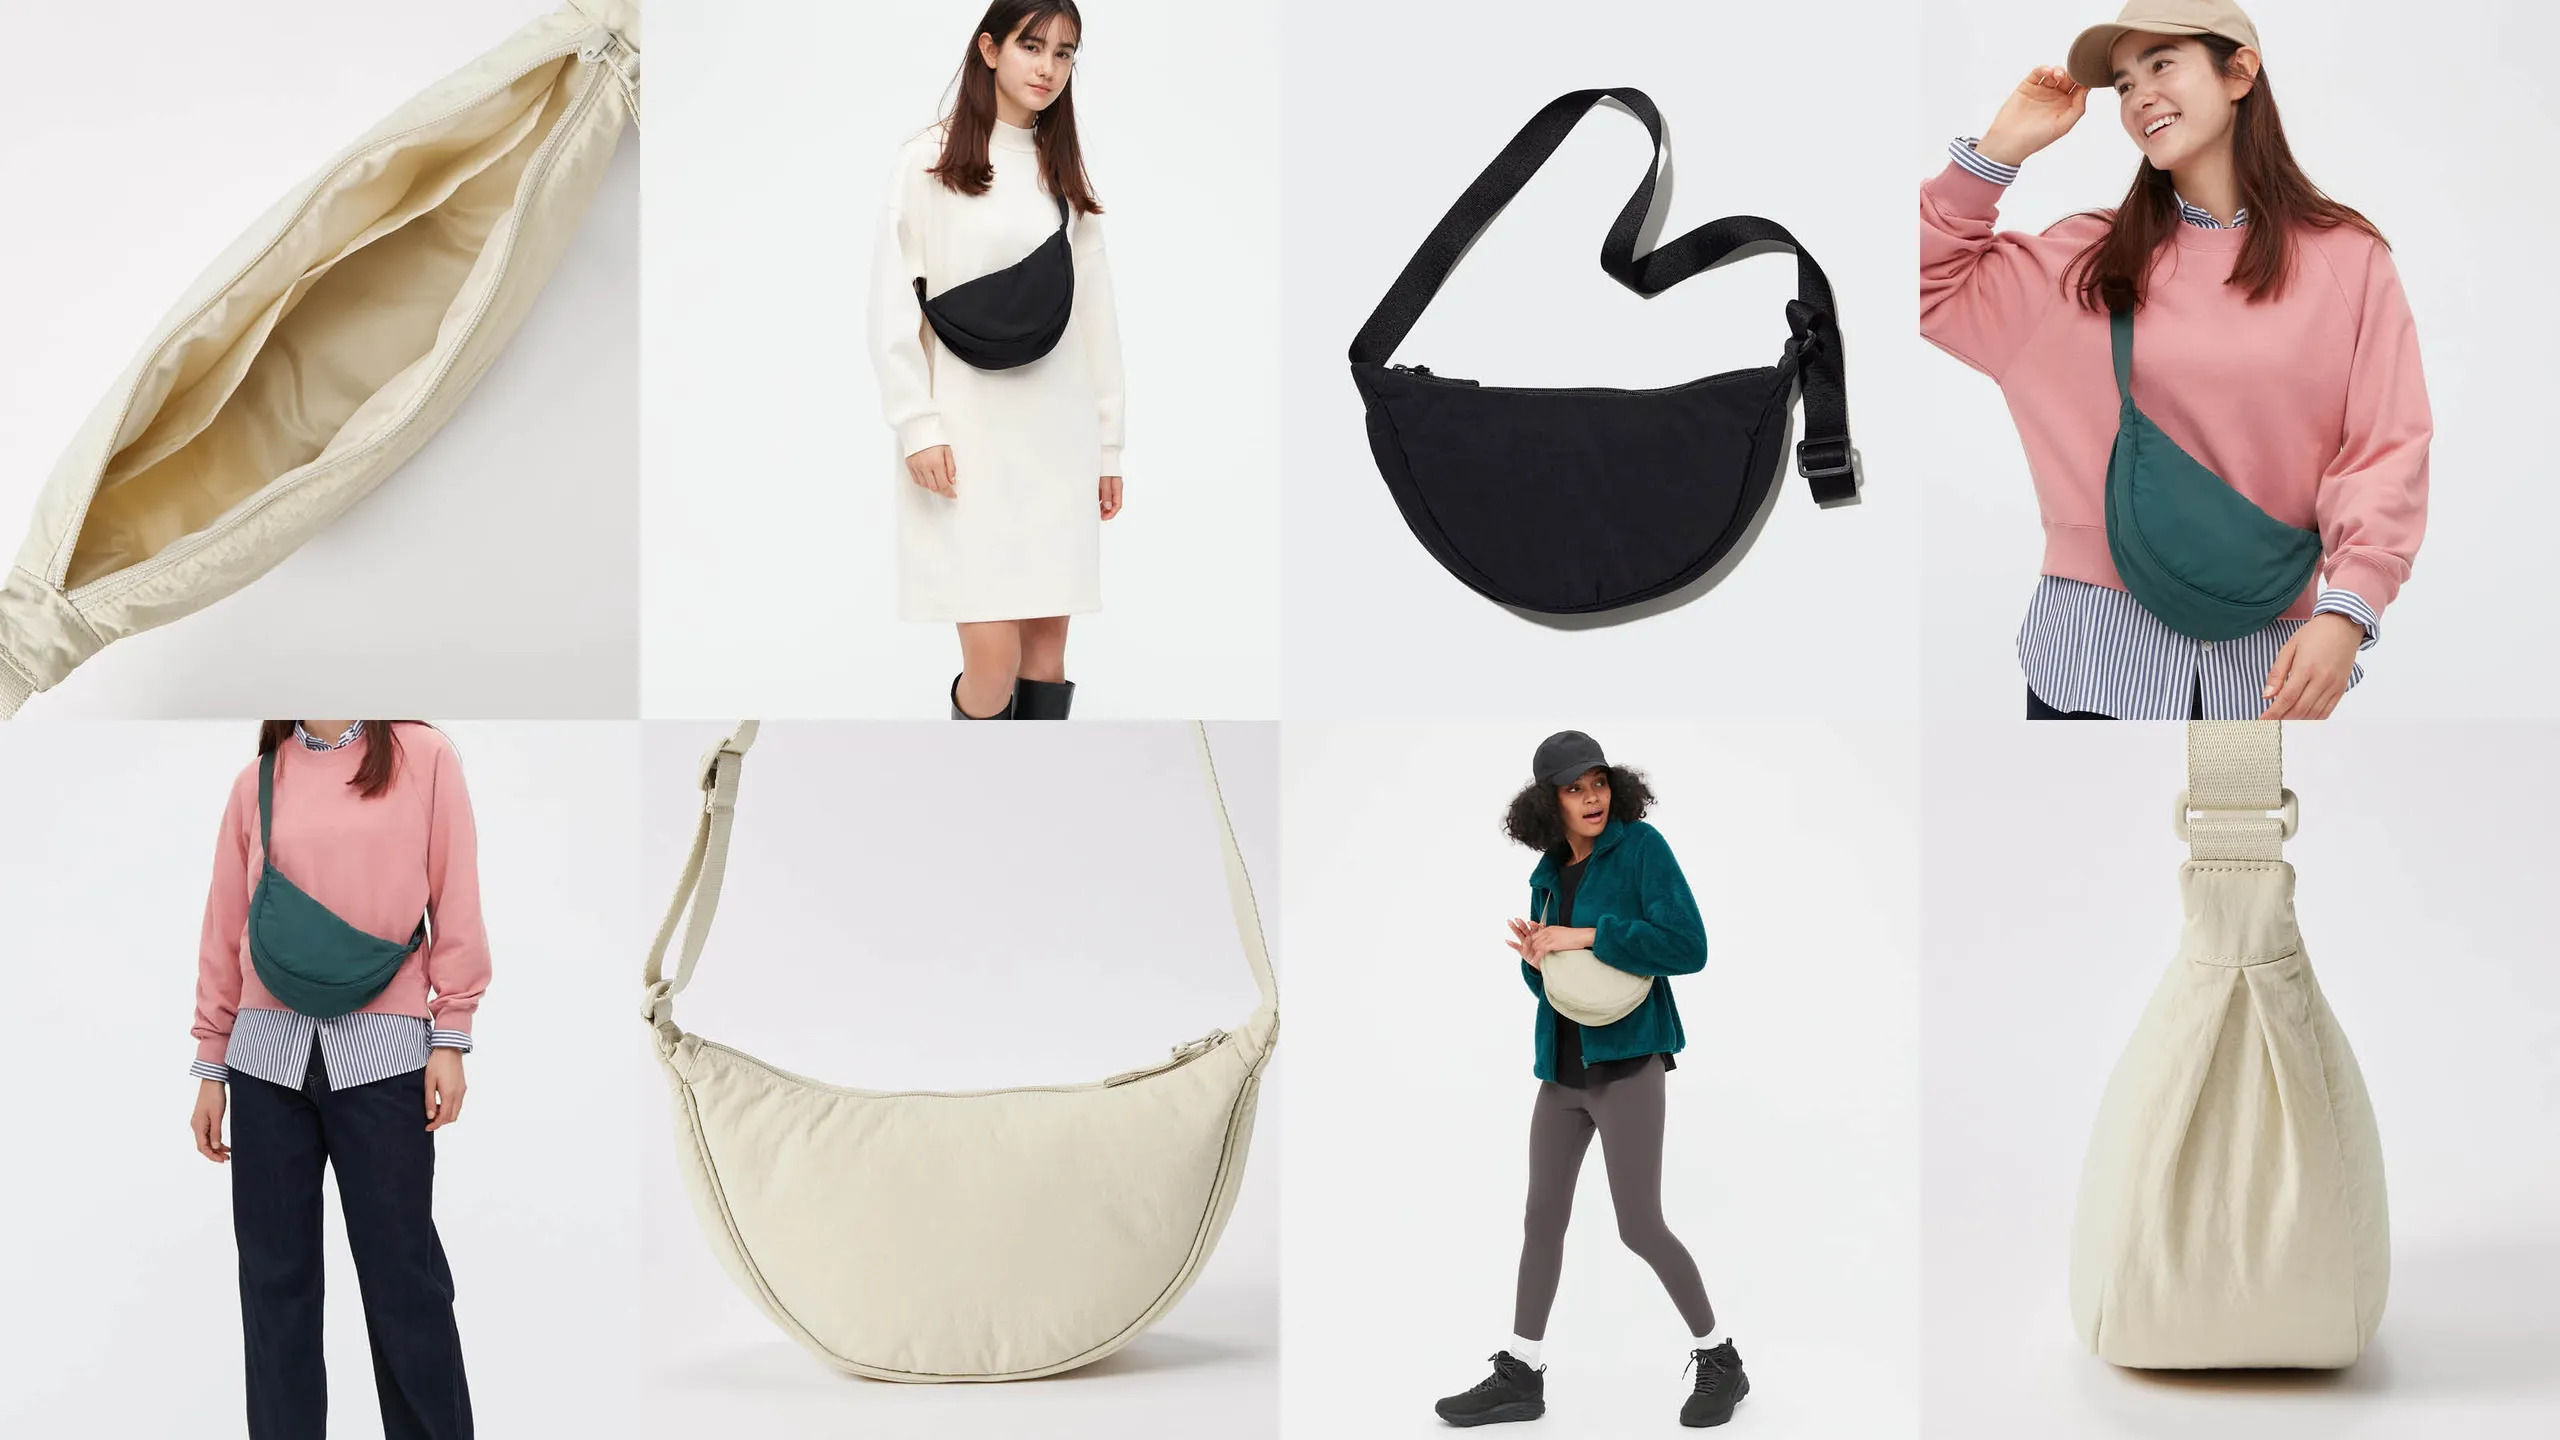 Vượt mặt các thương hiệu xa xỉ chiếc túi có giá chưa đến 20 của UNIQLO  bất ngờ trở thành sản phẩm thời trang hot nhất mùa hè này  RGB